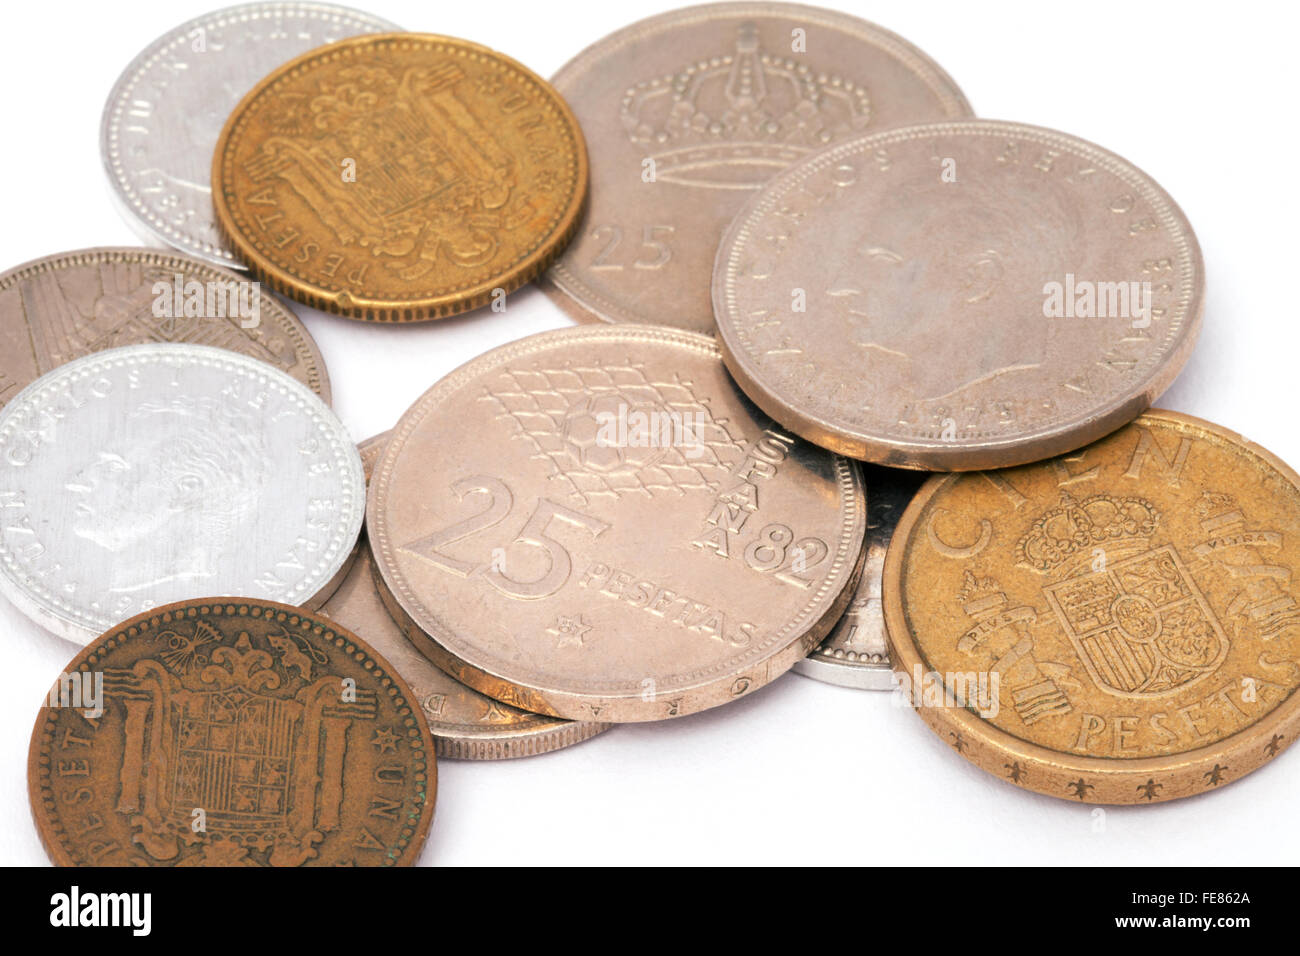 Old spanish peseta coins Stock Photo